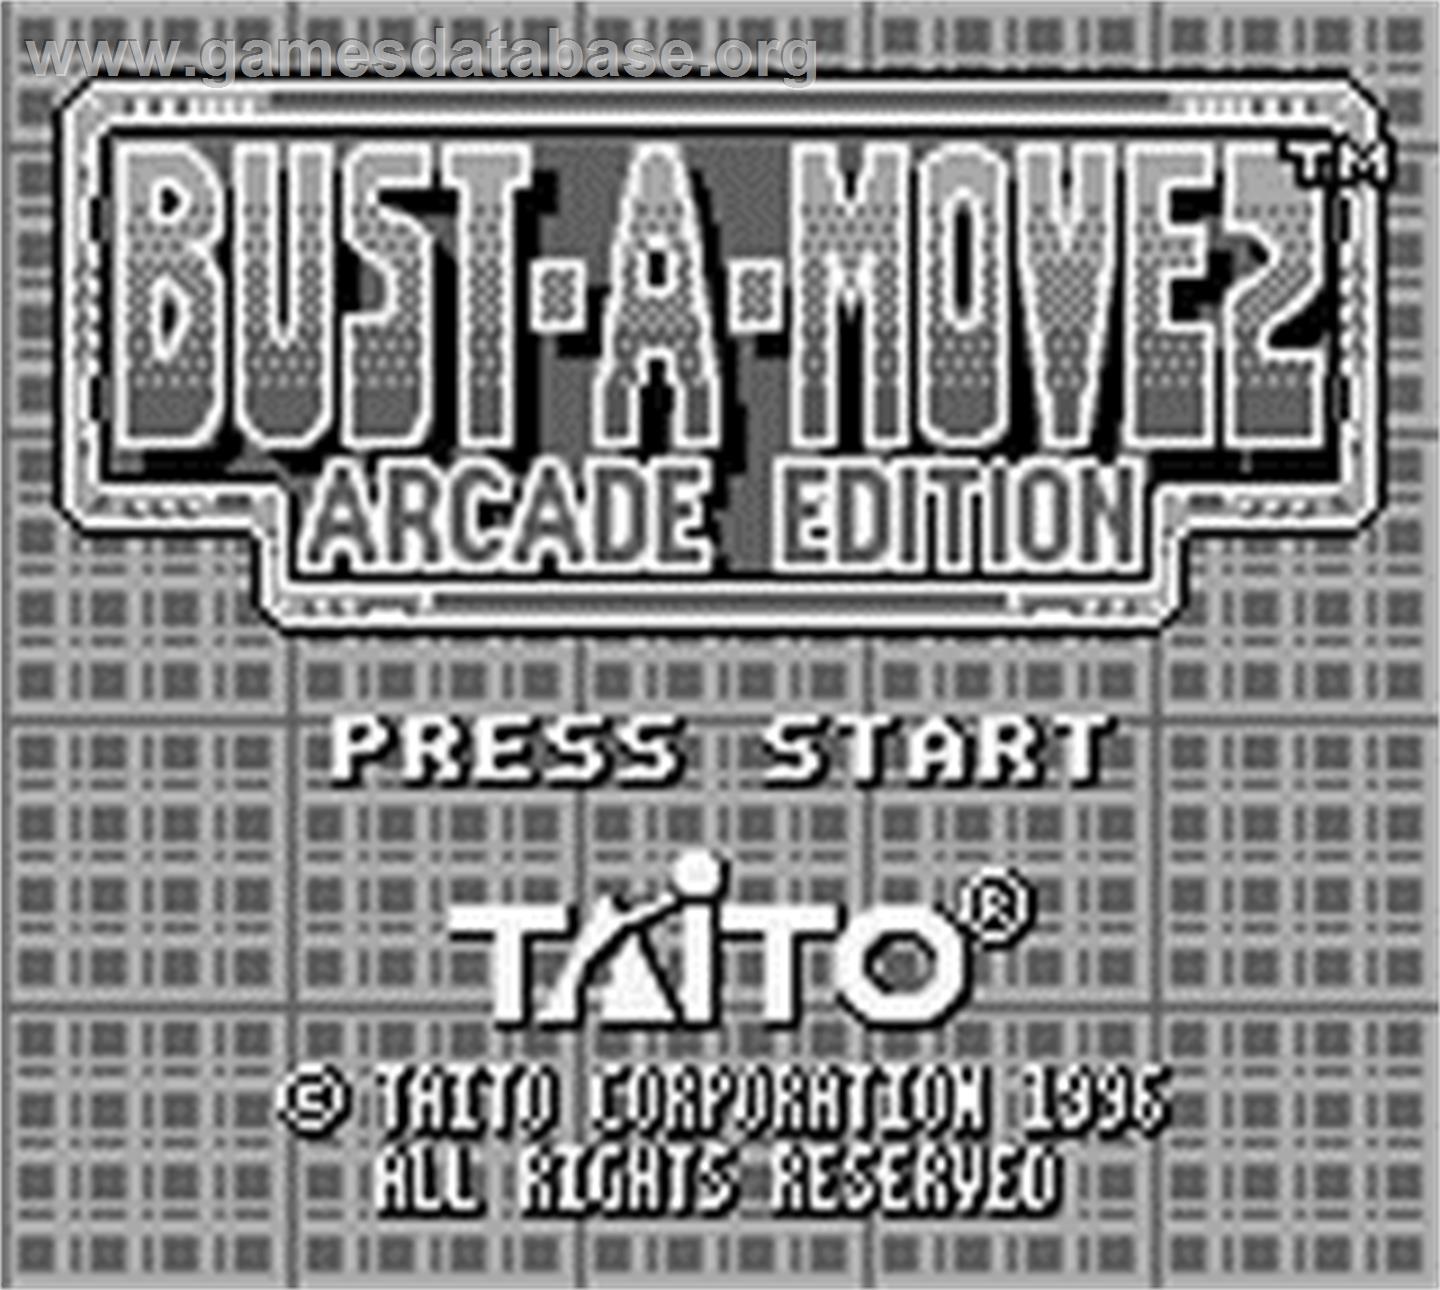 Bust-a-Move 2: Arcade Edition - Nintendo Game Boy - Artwork - Title Screen